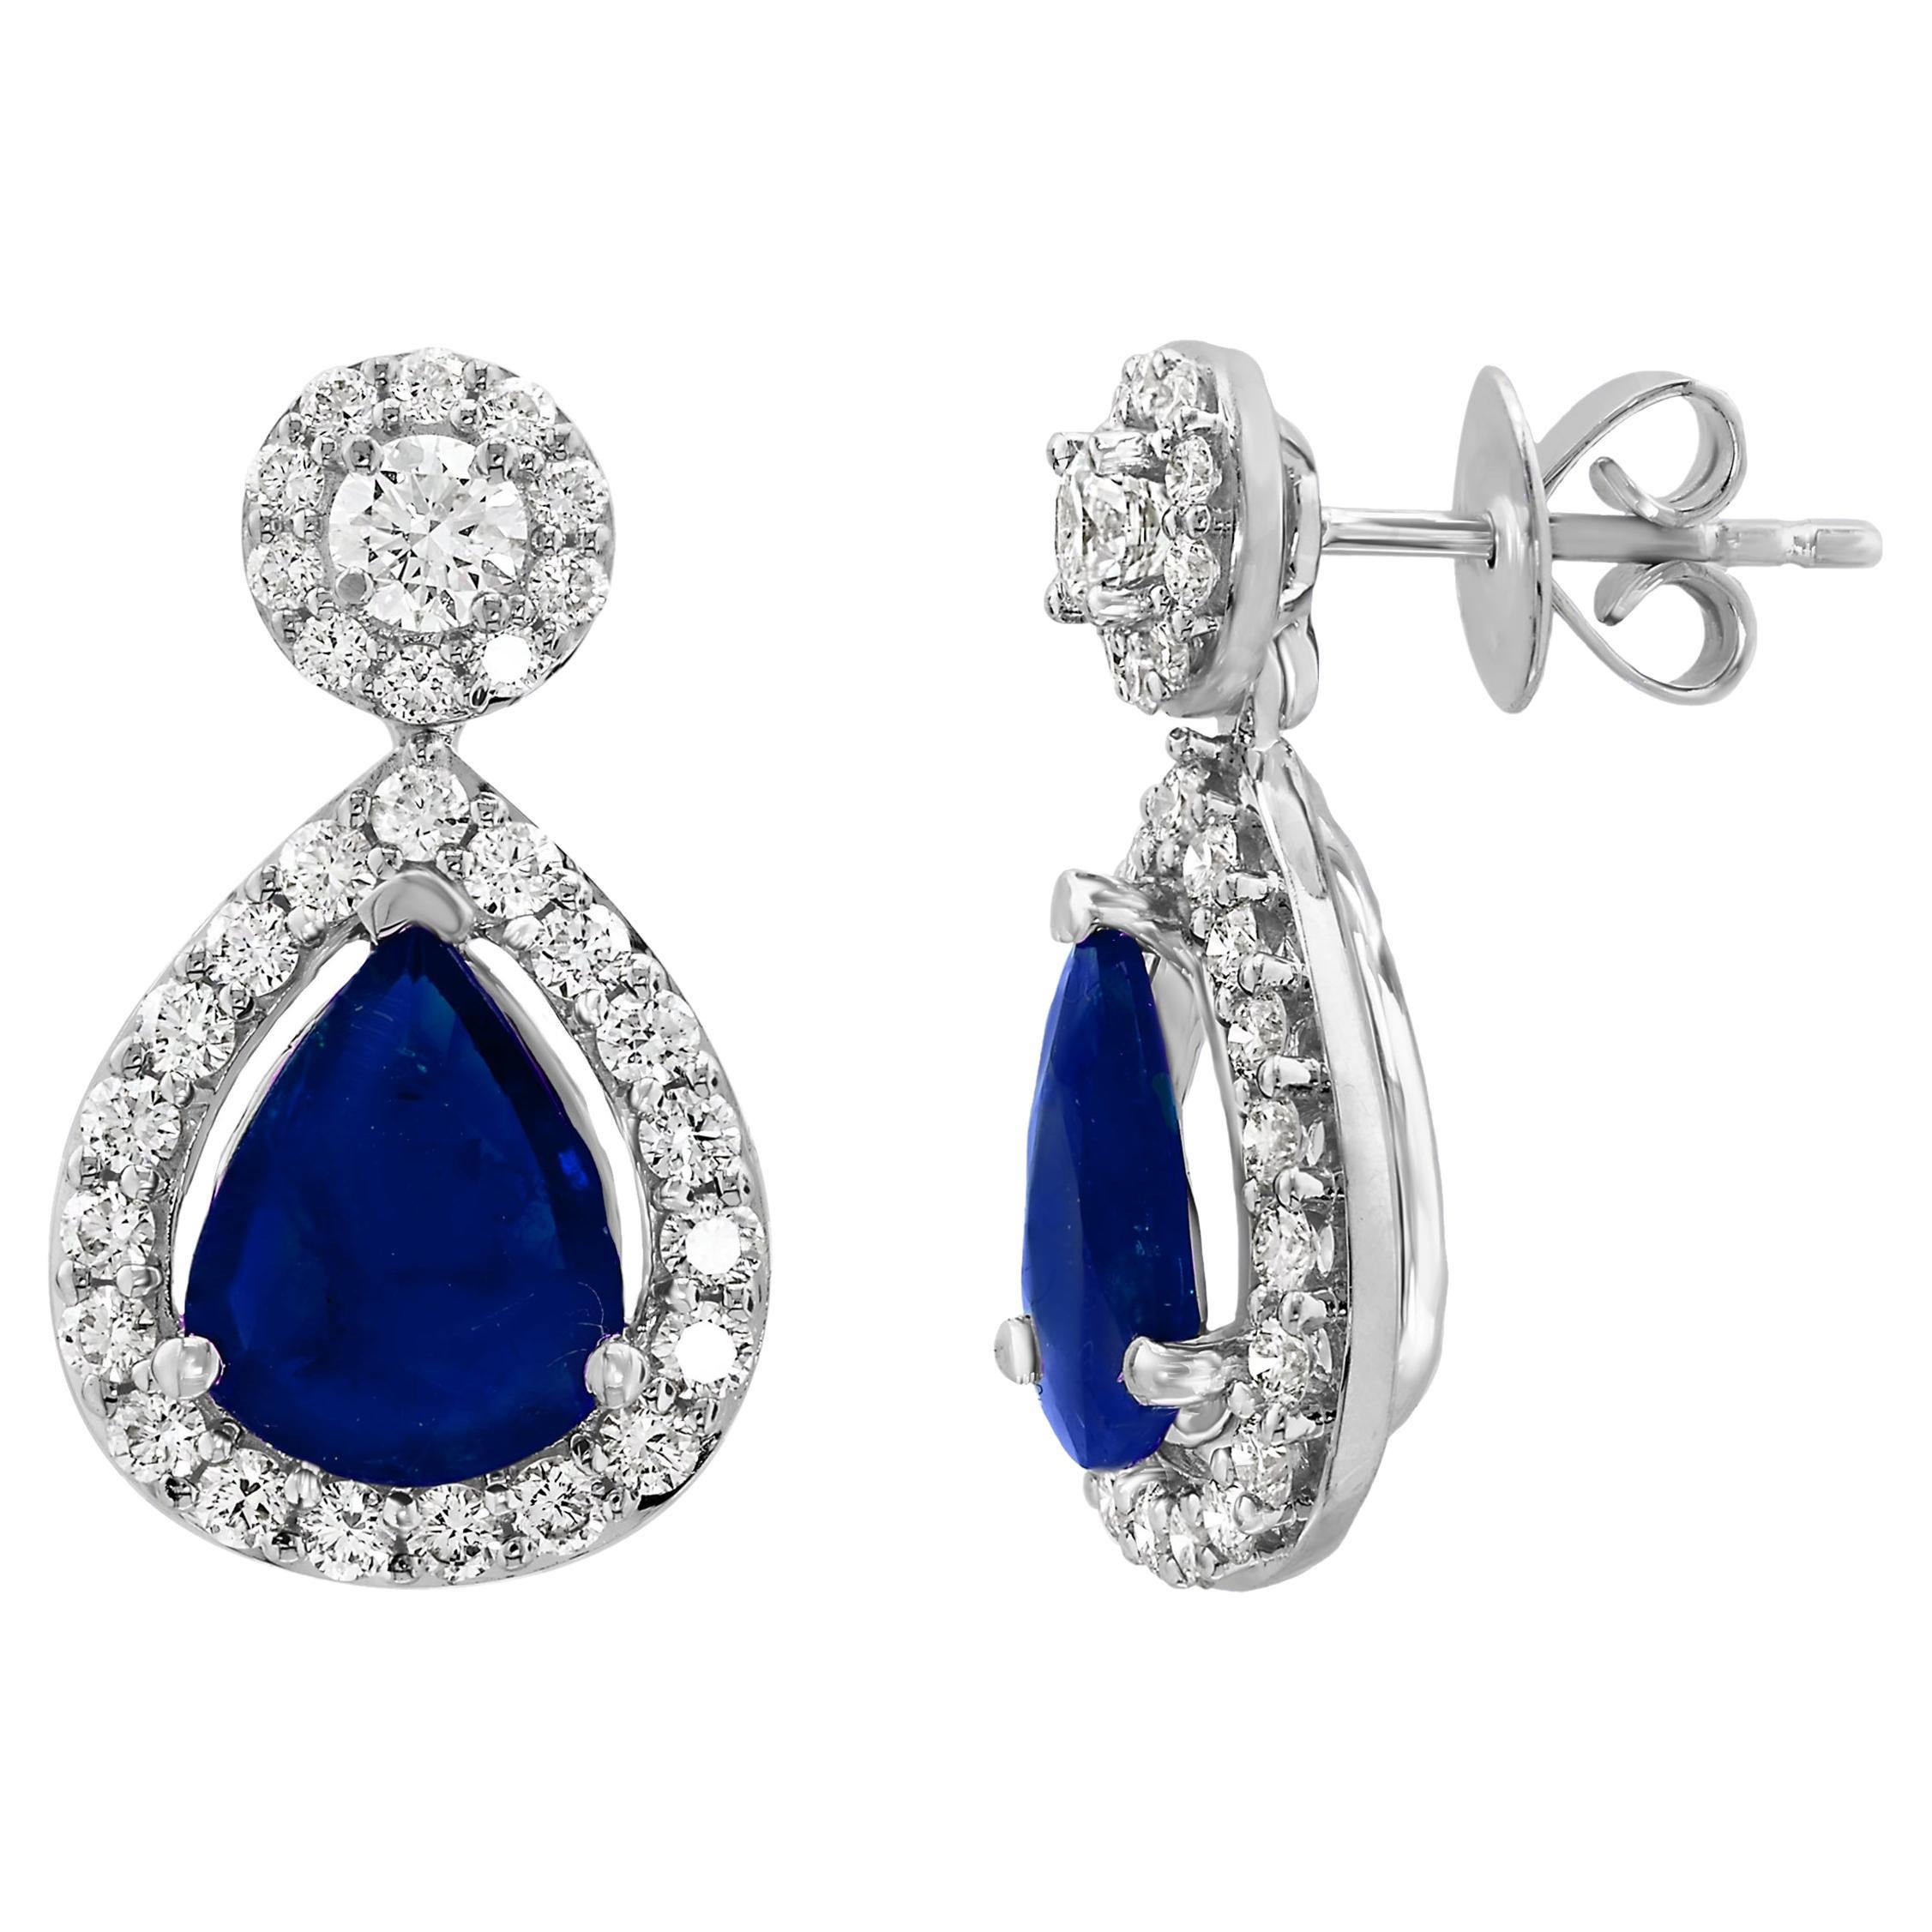 Pendants d'oreilles en or blanc 18 carats avec diamants et saphir bleu en forme de poire de 5,34 carats